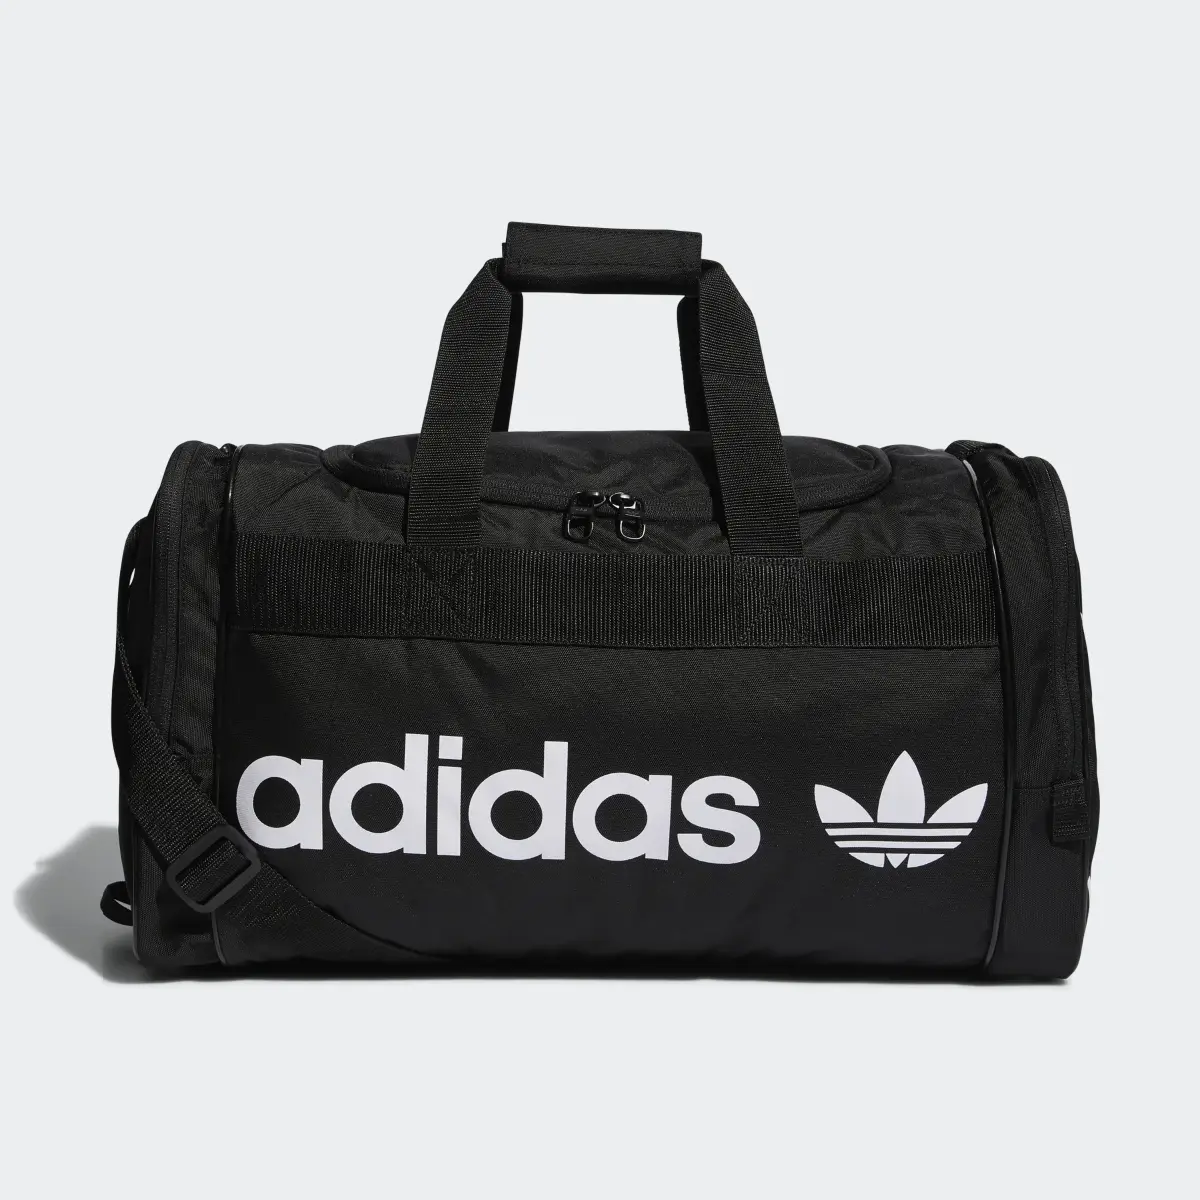 Adidas Santiago Duffel Bag. 2